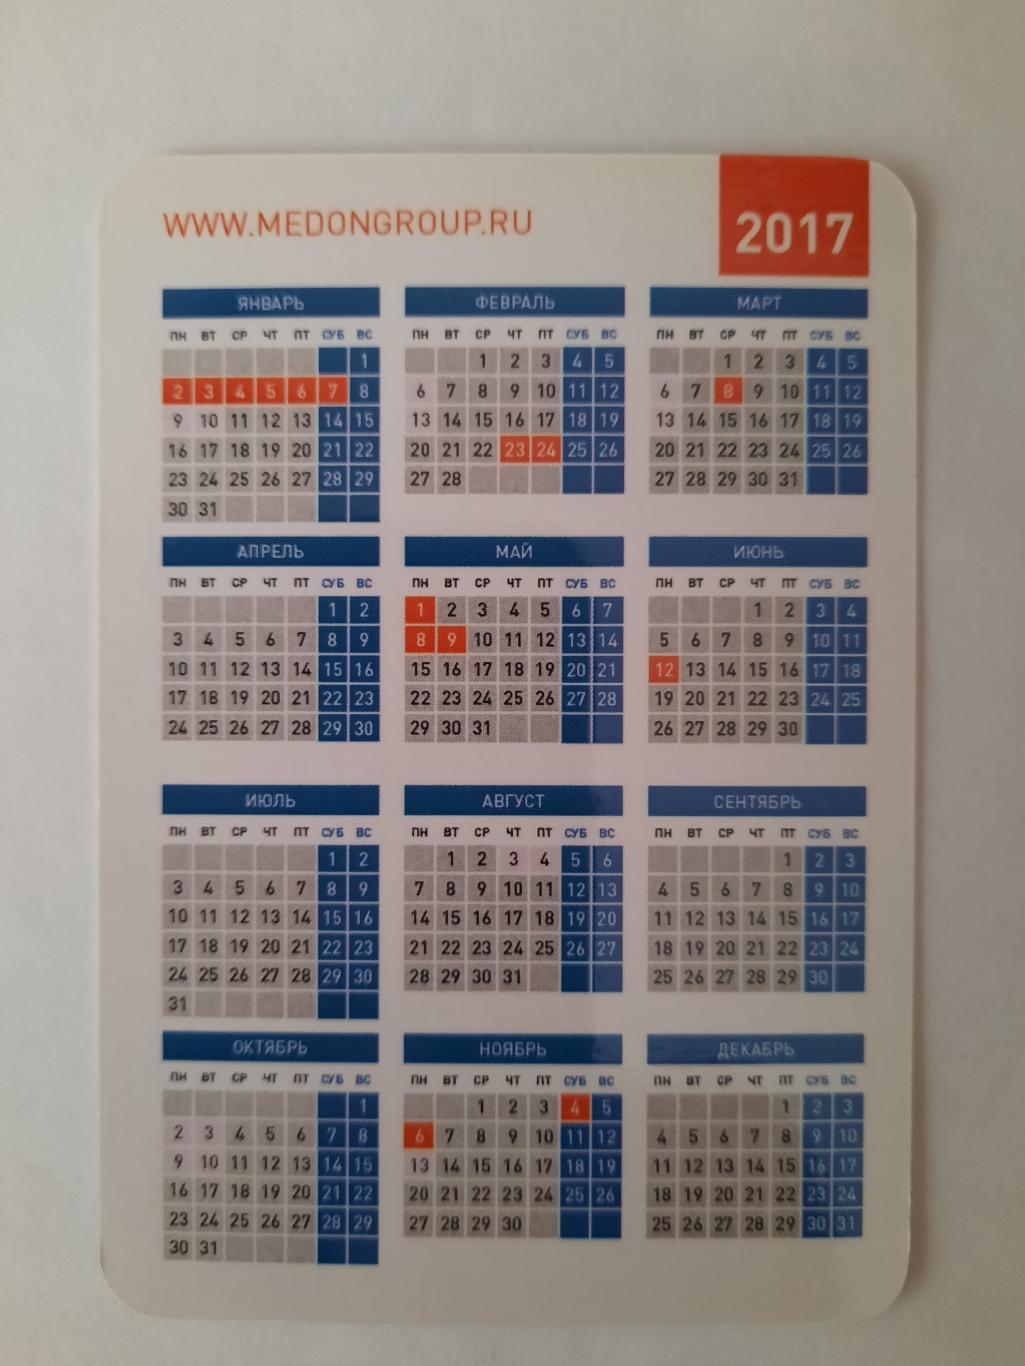 Календарик карманный. 20 лет медицинских достижений и открытий 2017г. 1